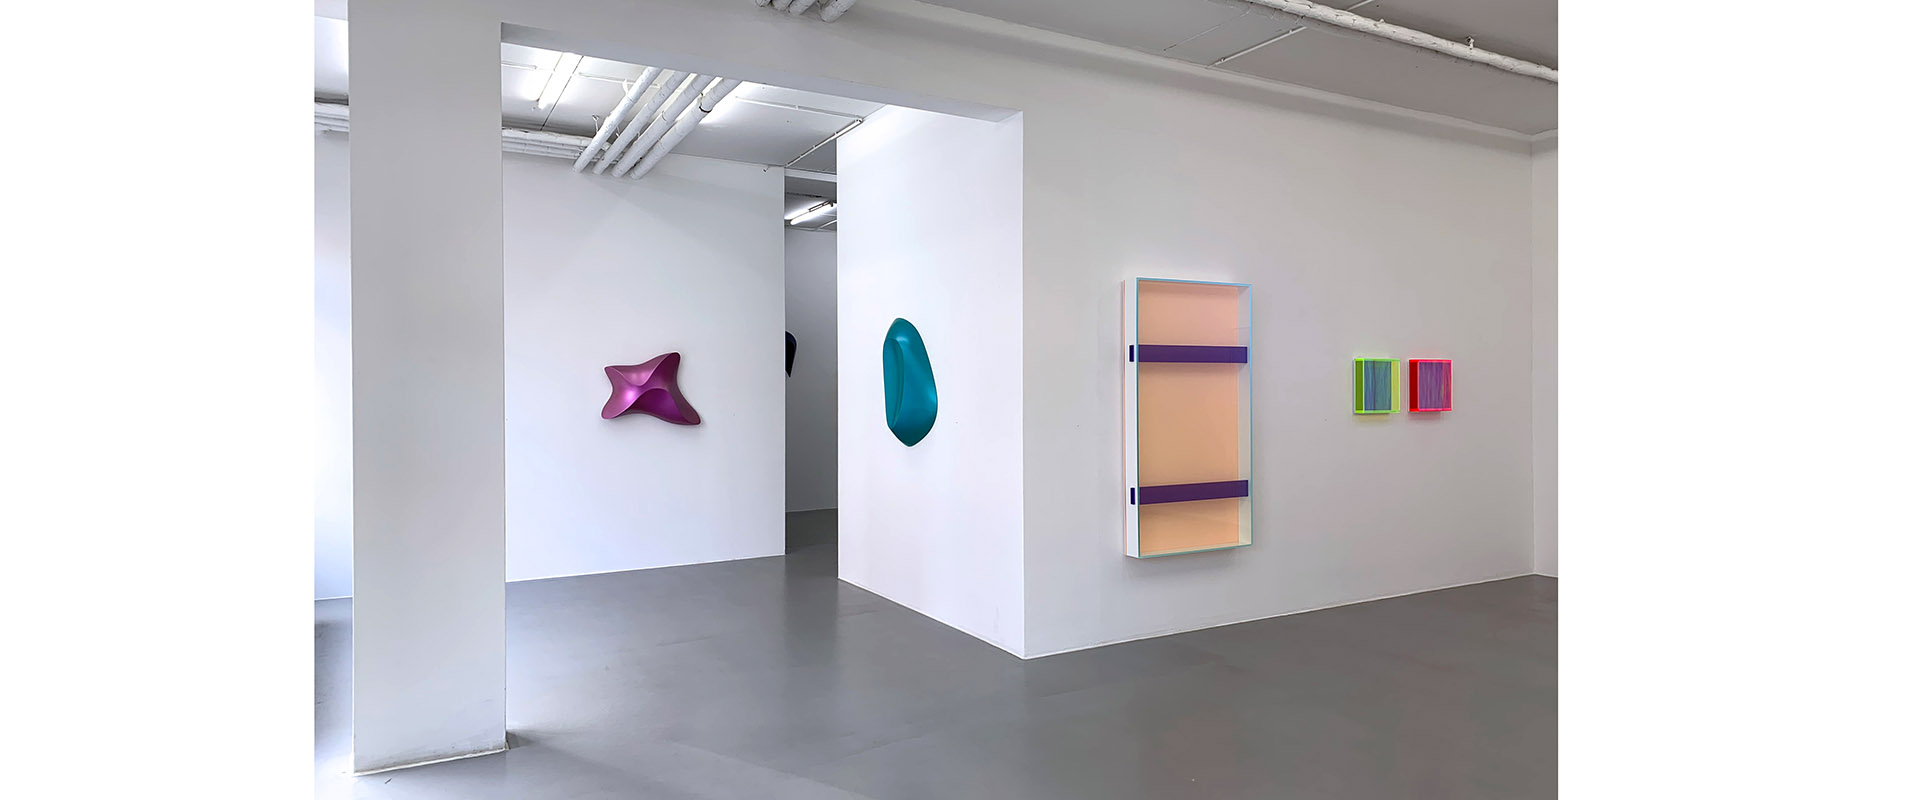 Ausstellungsansicht "Fluoridescent", Regine Schumann - Bill Thompson, Galerie Renate Bender 2020